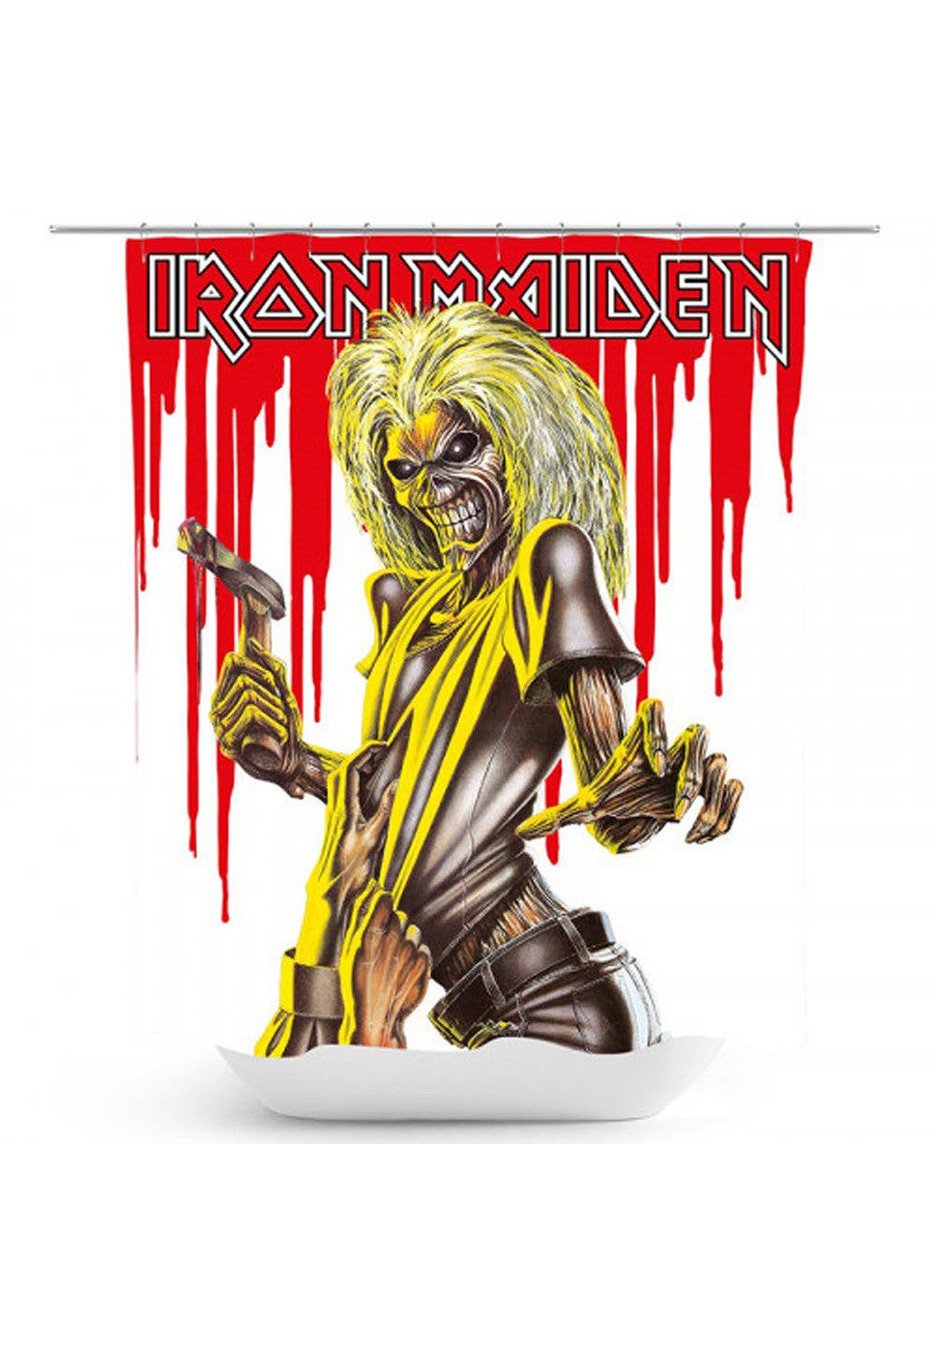 Iron Maiden - Killers - Shower Curtain